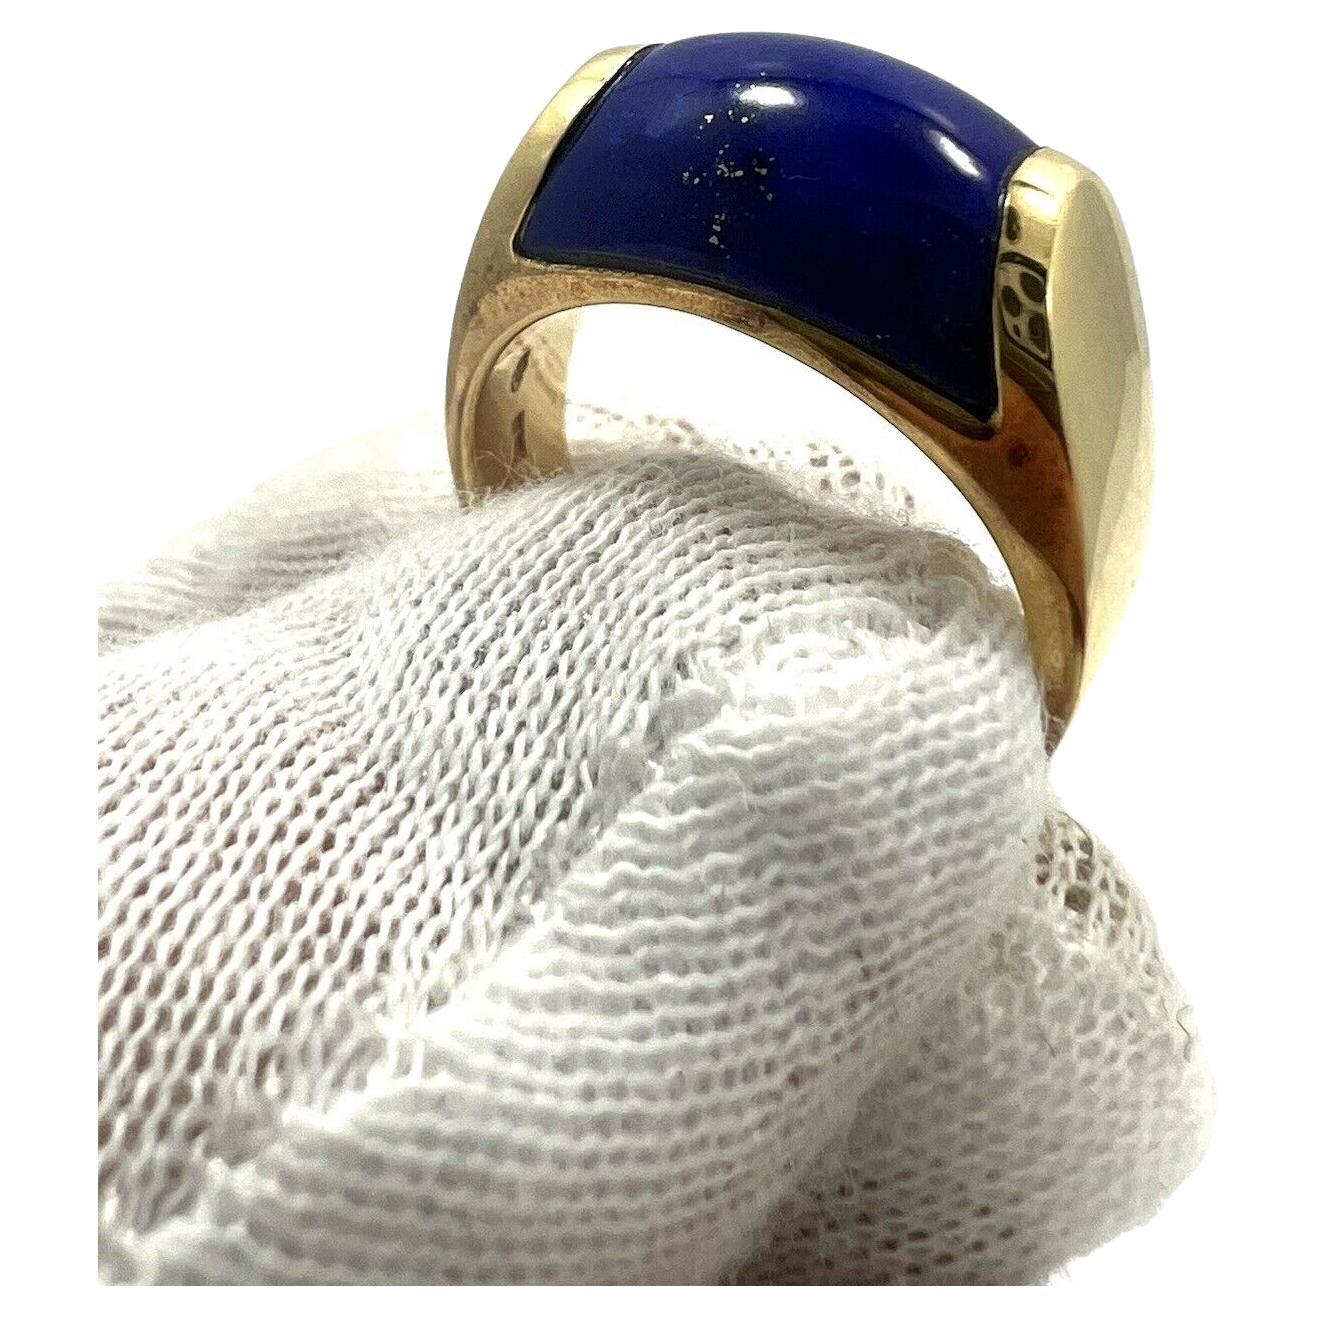 Bvlgari Italy 18 Karat Yellow Gold & Lapis Tronchetto Ring Vintage